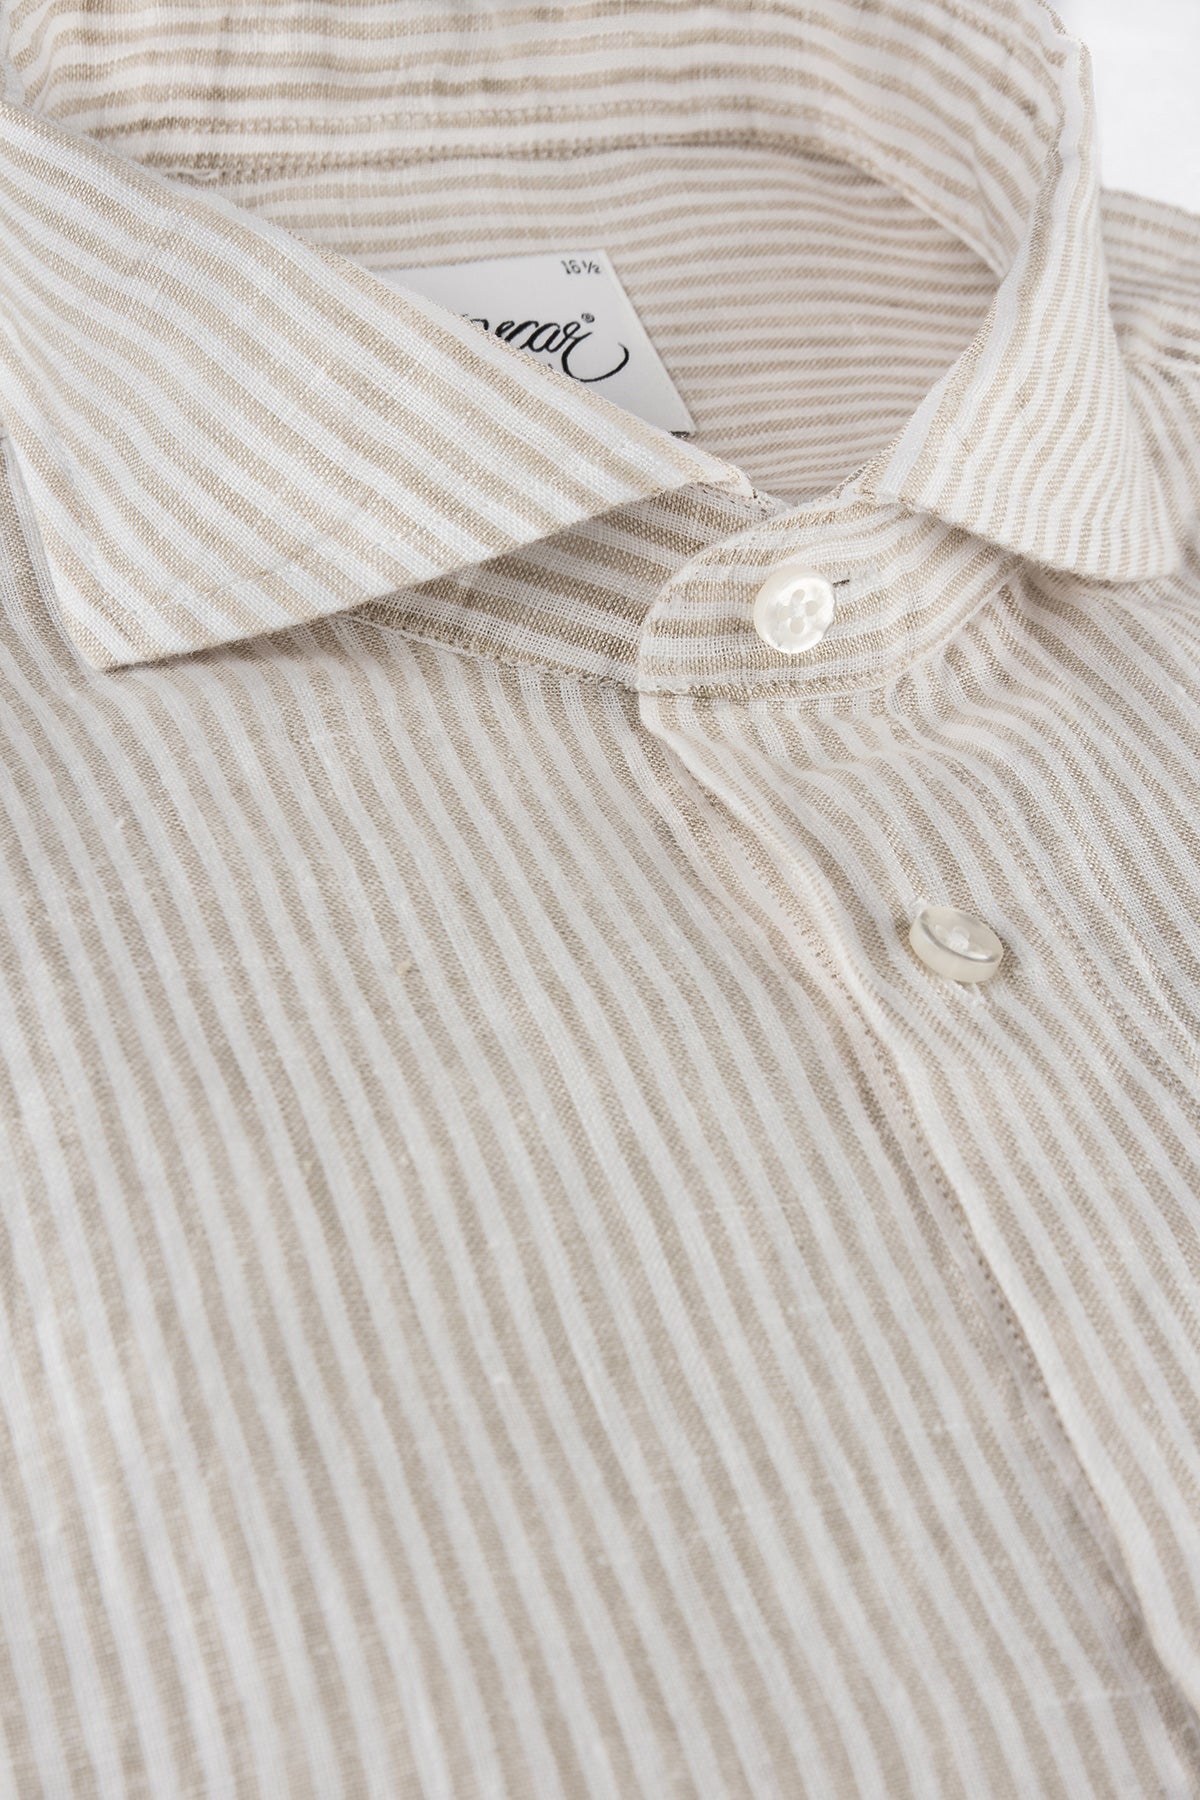 Beige striped linen regular fit shirt